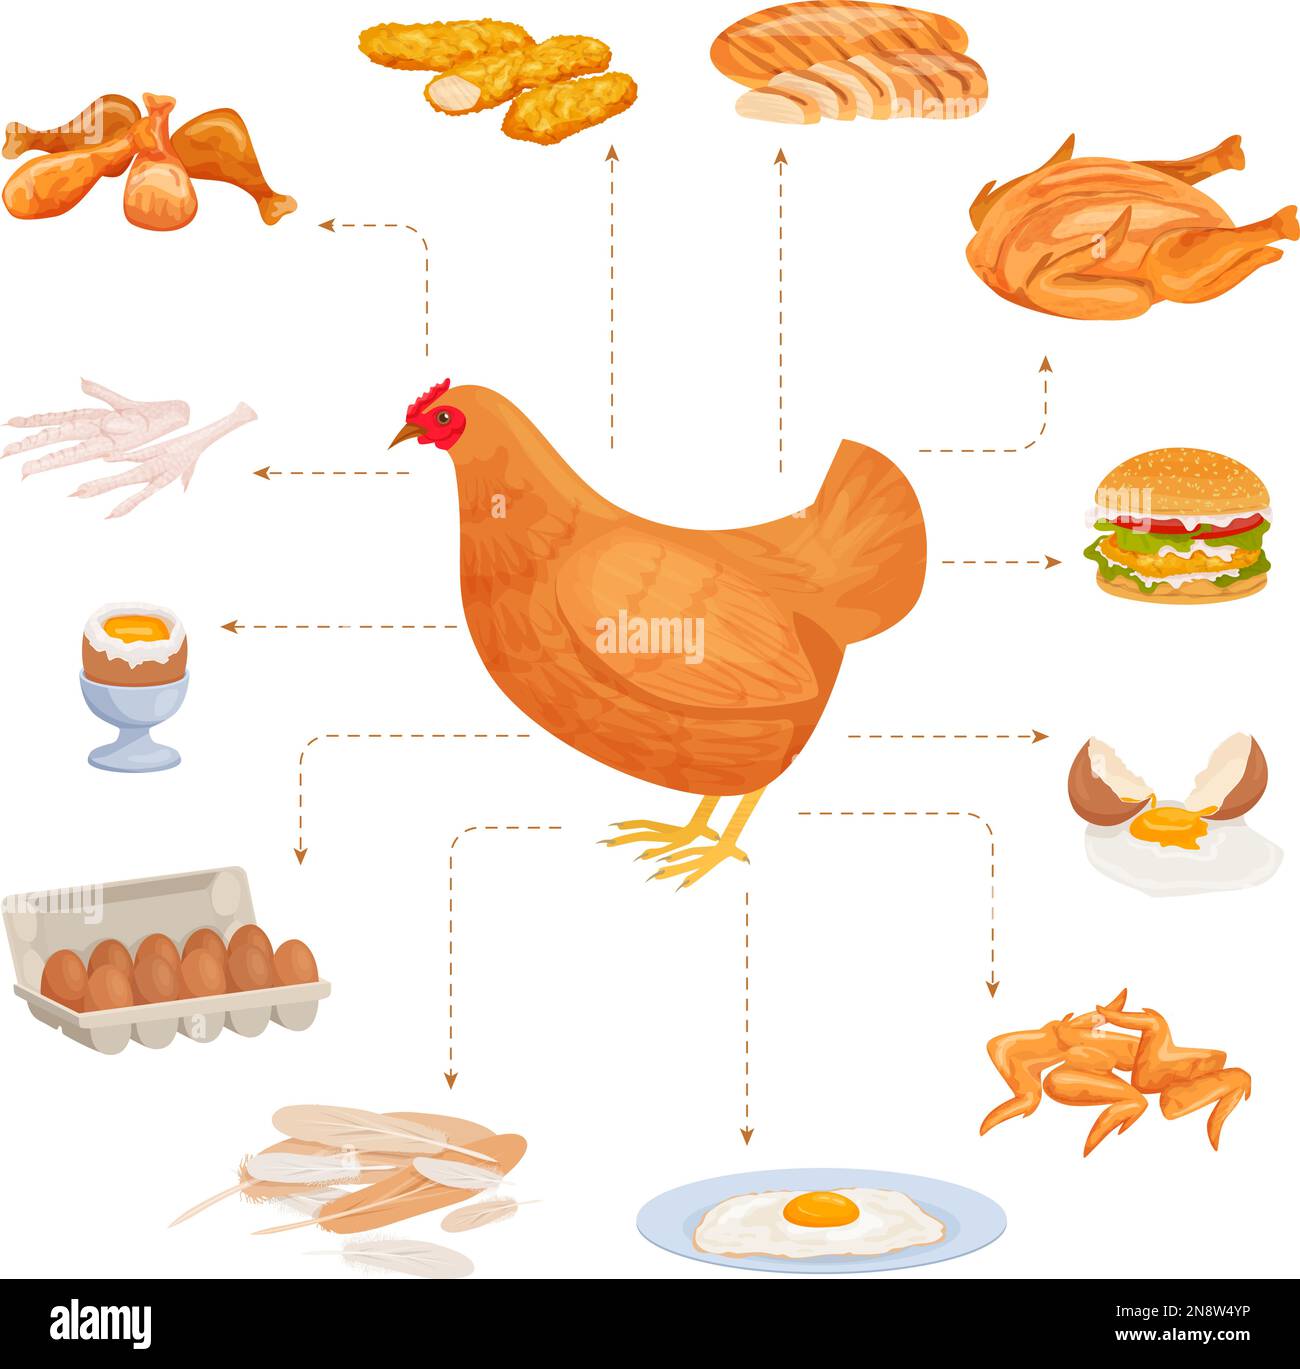 Prodotti di pollo composizione piatta con set di alimenti isolati per pollame che indicano l'immagine dell'illustrazione del vettore di gallina da allevamento Illustrazione Vettoriale